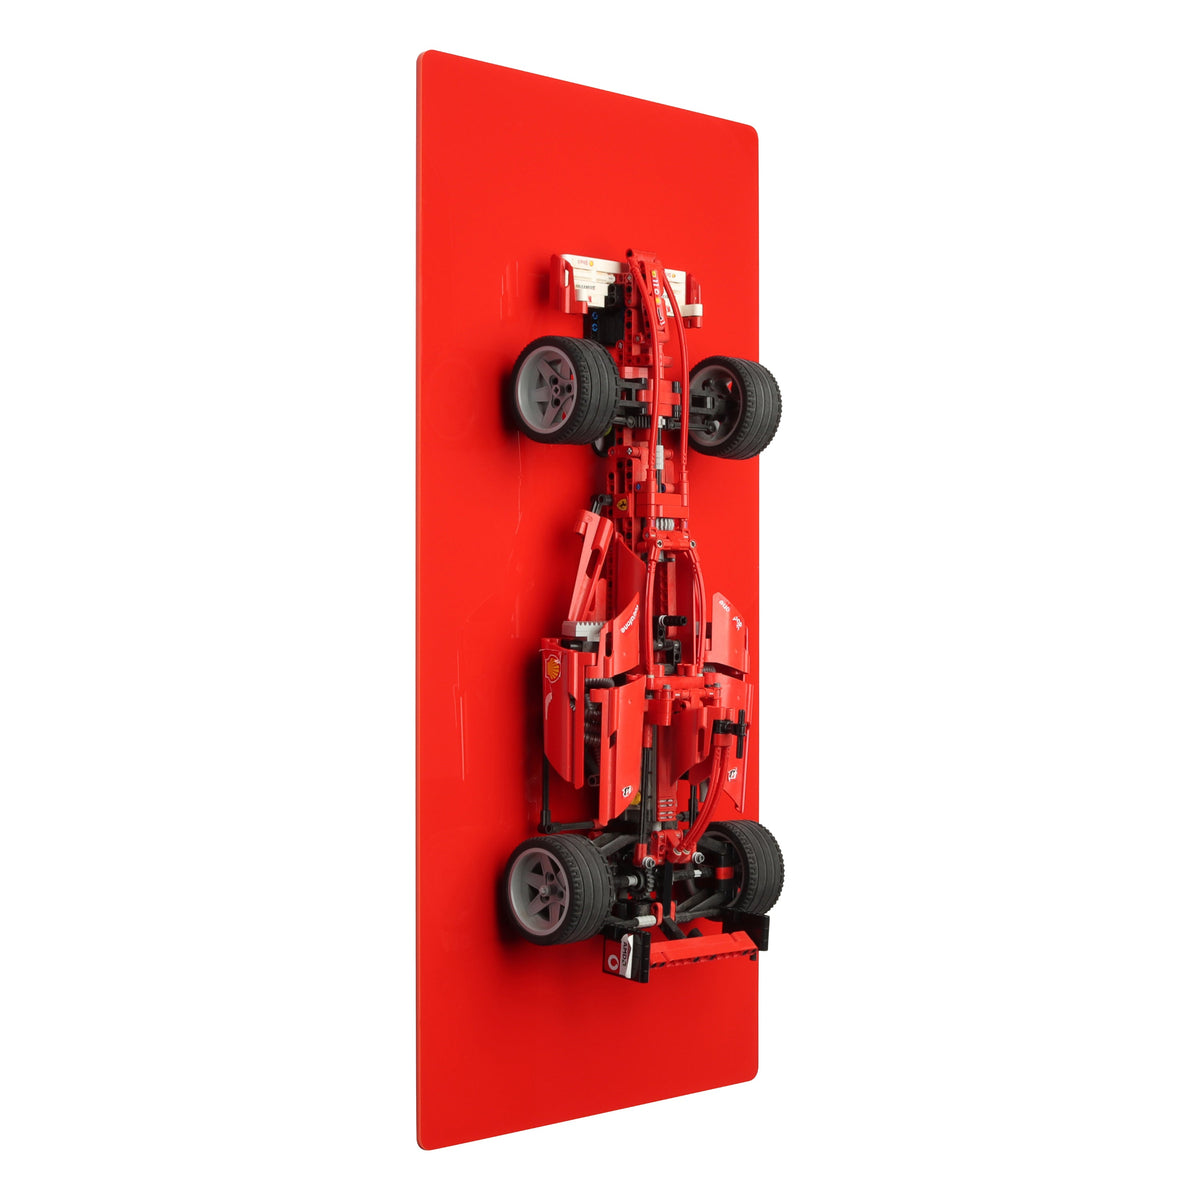 Wall display for LEGO 8157 Ferrari F1